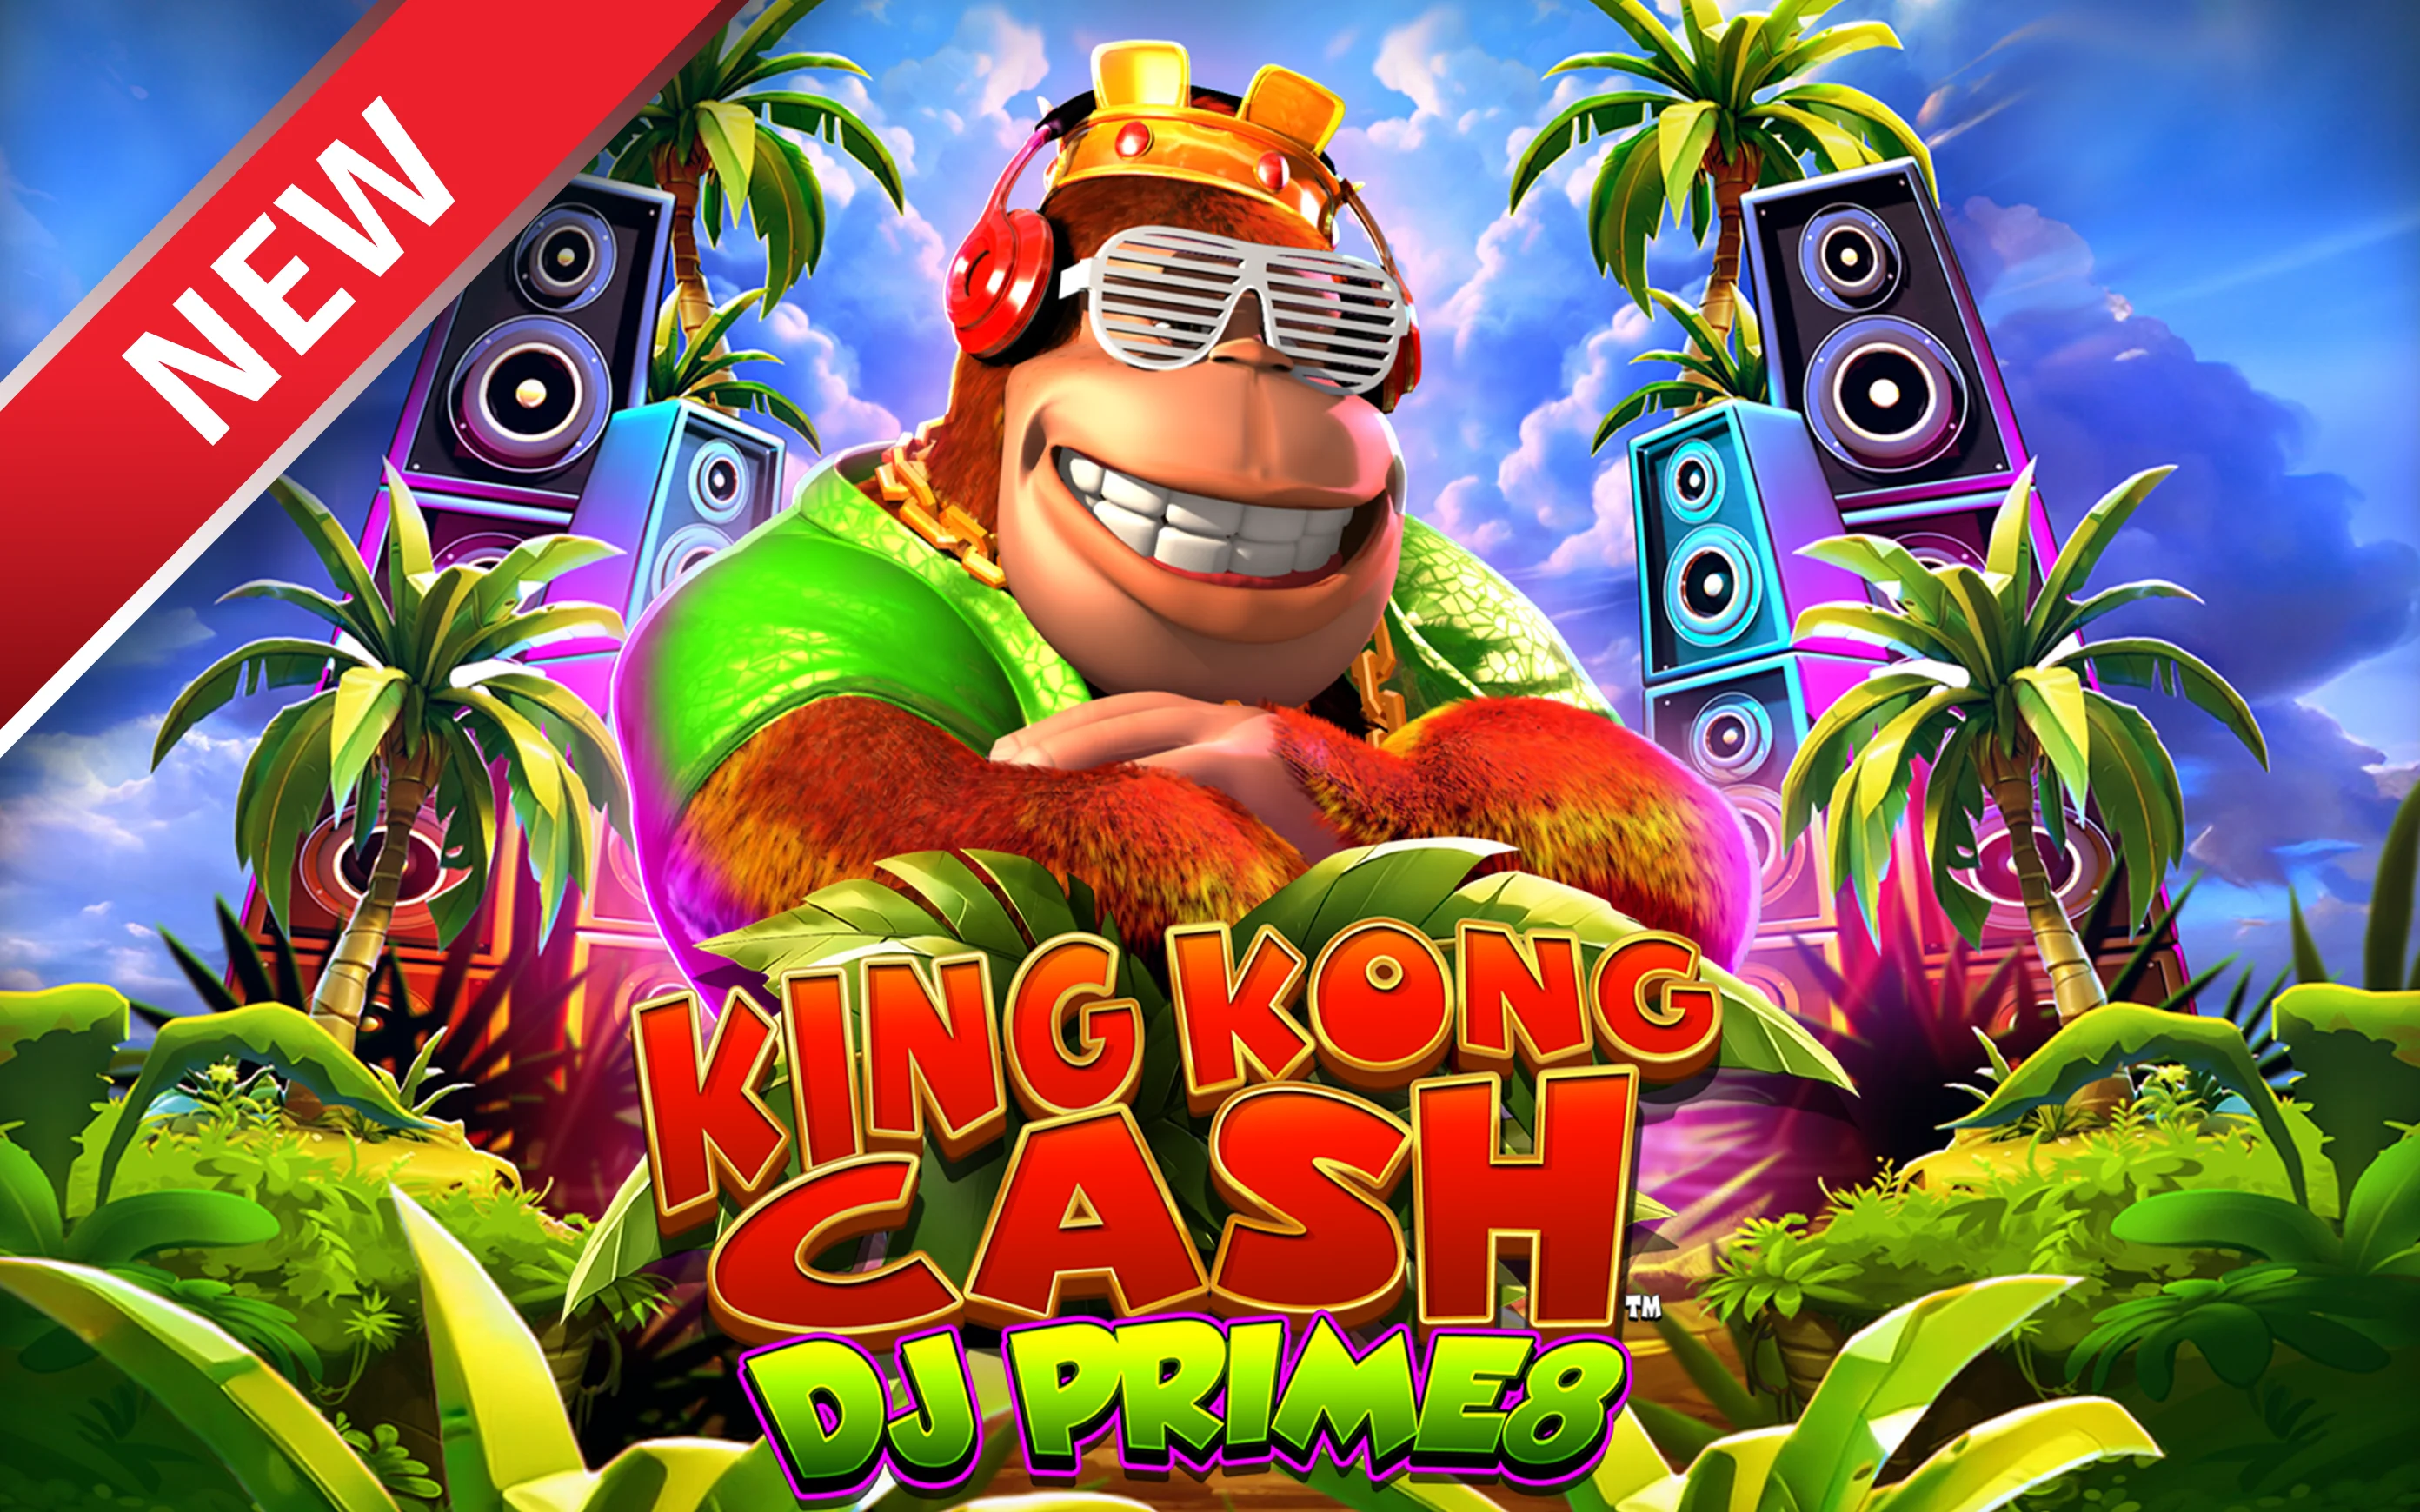 Starcasino.be online casino üzerinden King Kong Cash DJ Prime8 oynayın